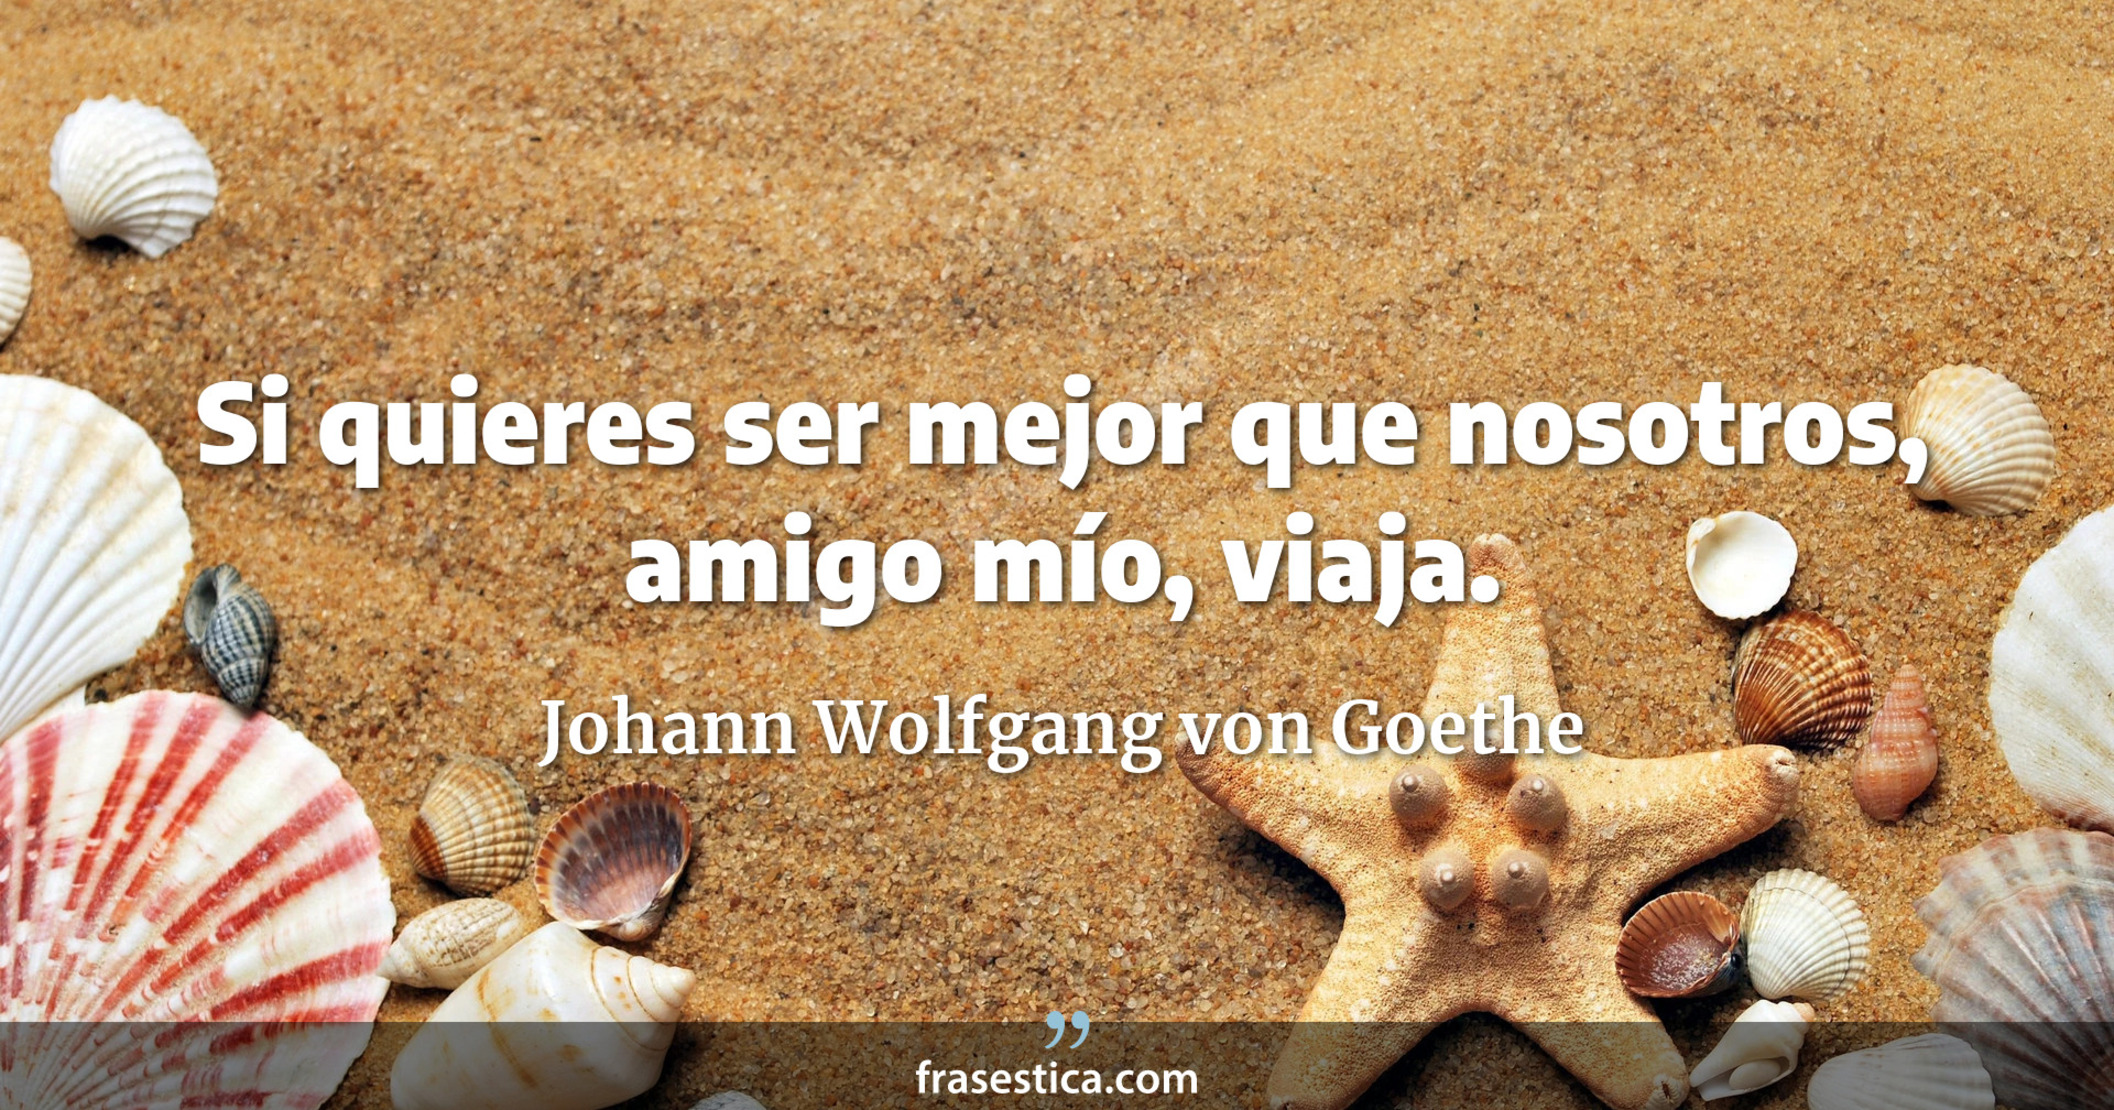 Si quieres ser mejor que nosotros, amigo mío, viaja. - Johann Wolfgang von Goethe